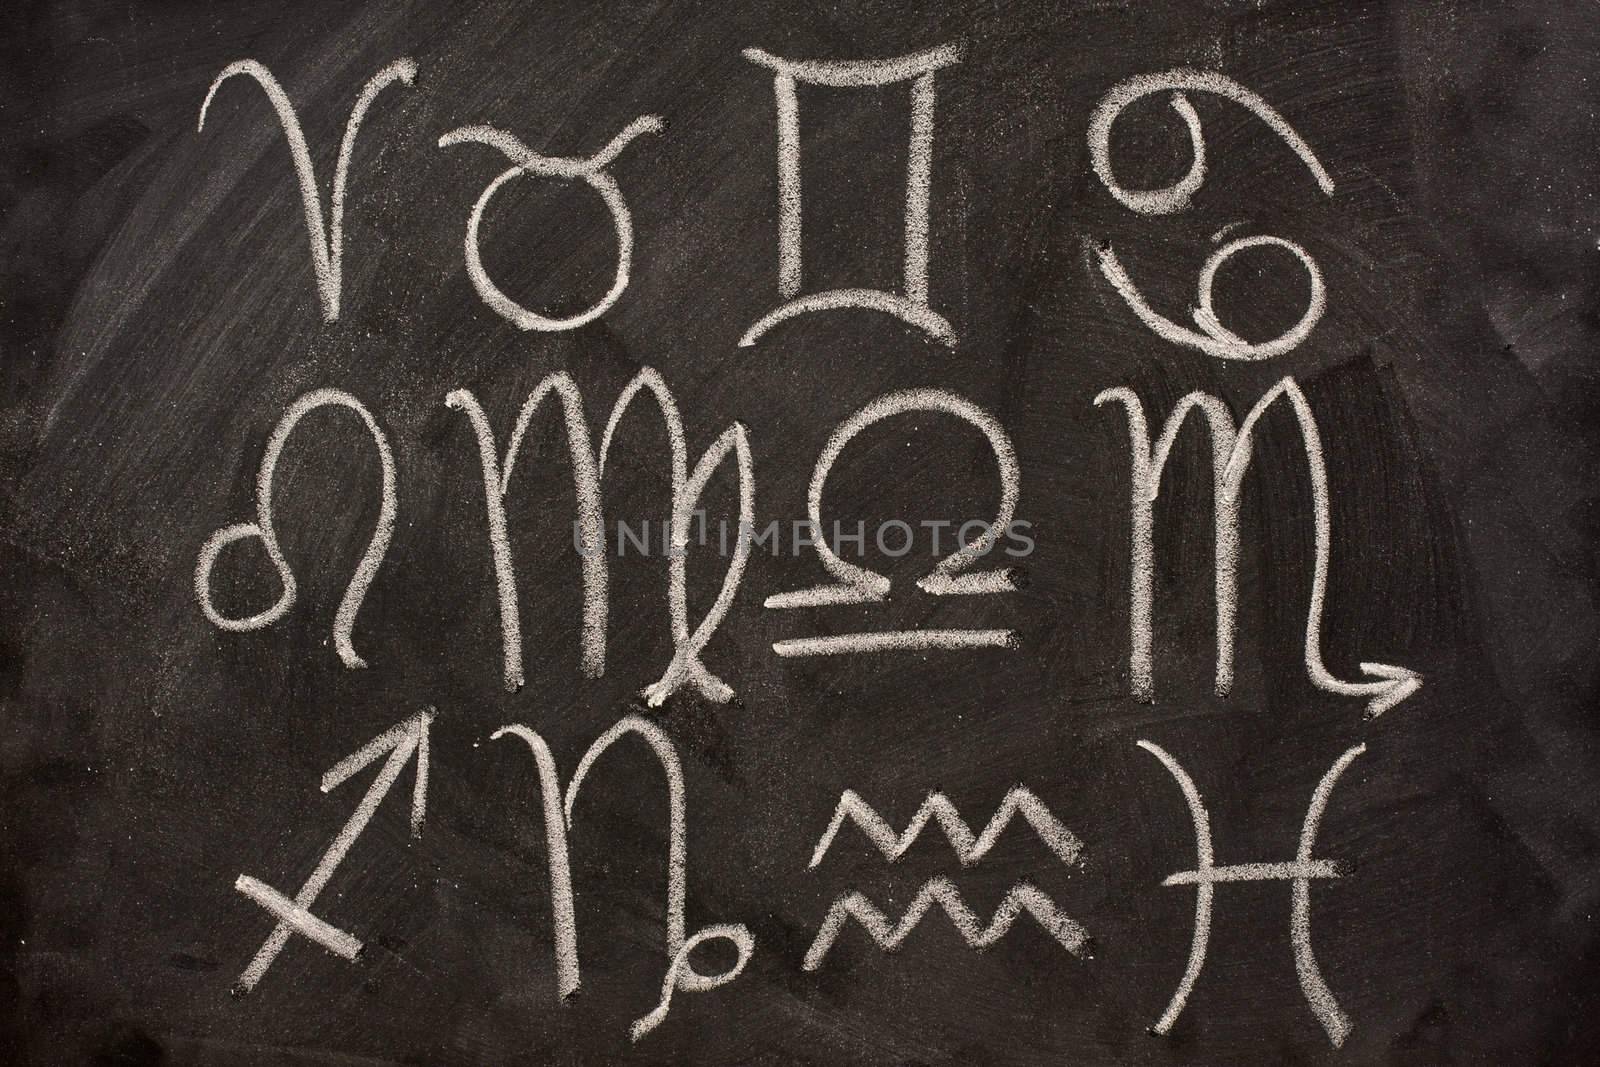 western zodiac symbols on blackboard by PixelsAway